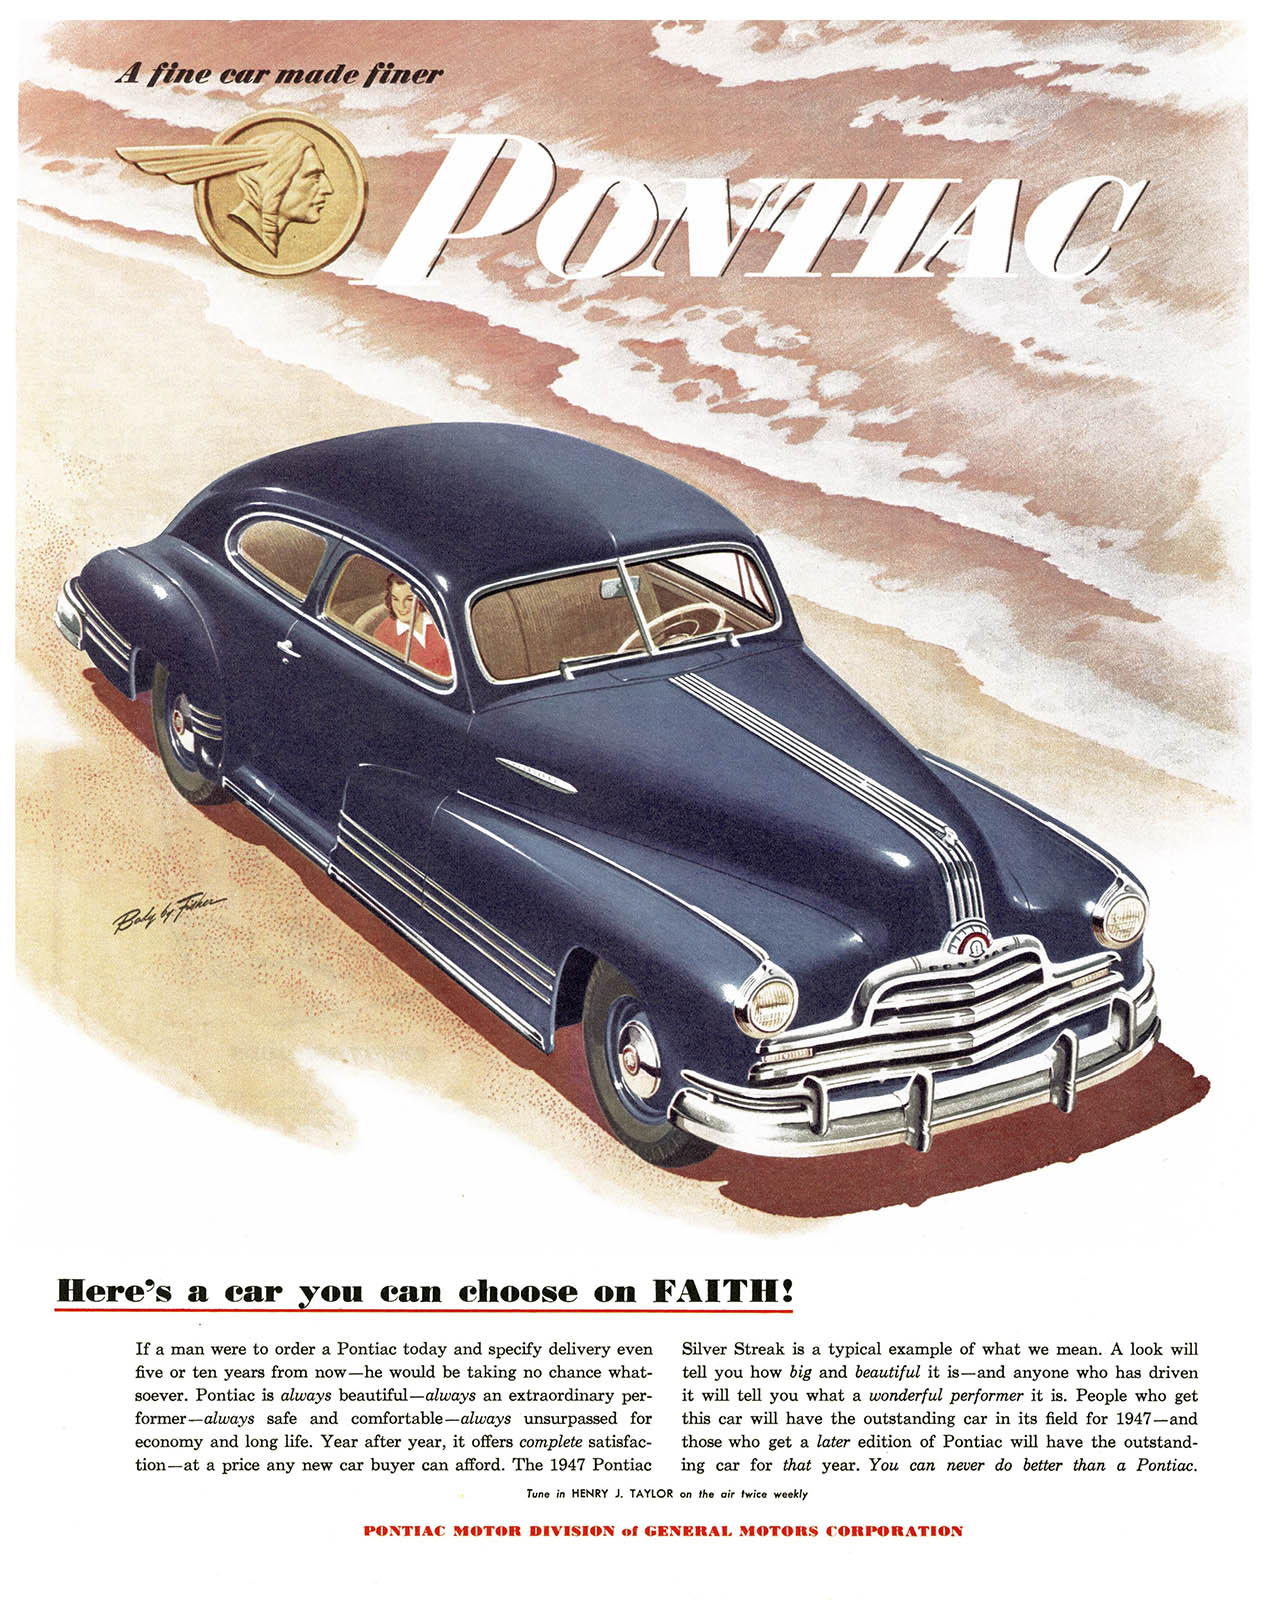 Pontiac Sedan-Coupe Ad (June, 1947): Here's a car you can choose on FAITH!